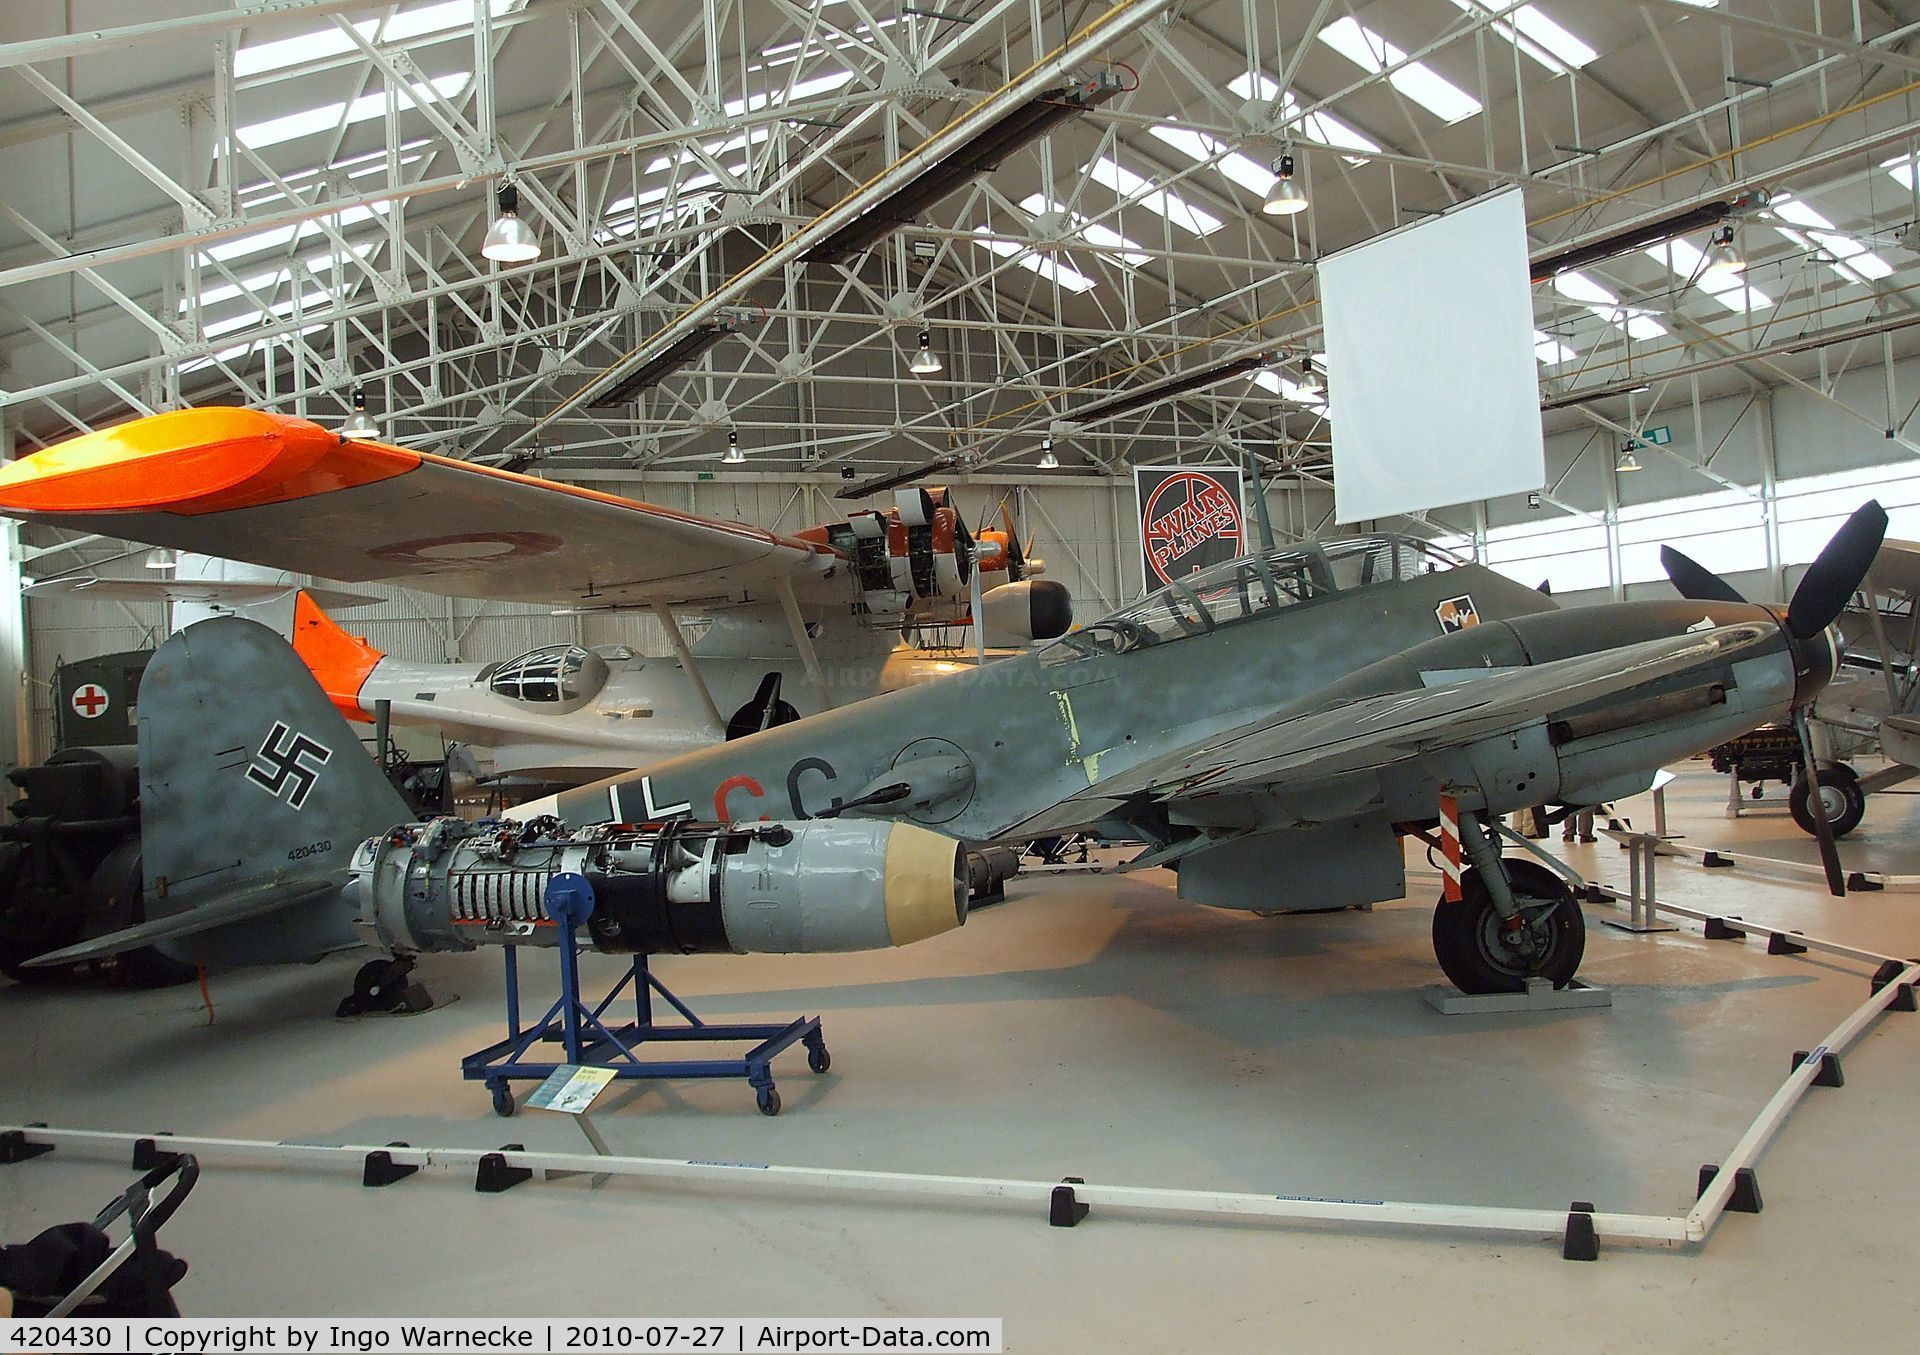 420430, Messerschmitt Me-410A C/N 420430, Messerschmitt Me 410A at the RAF Museum, Cosford